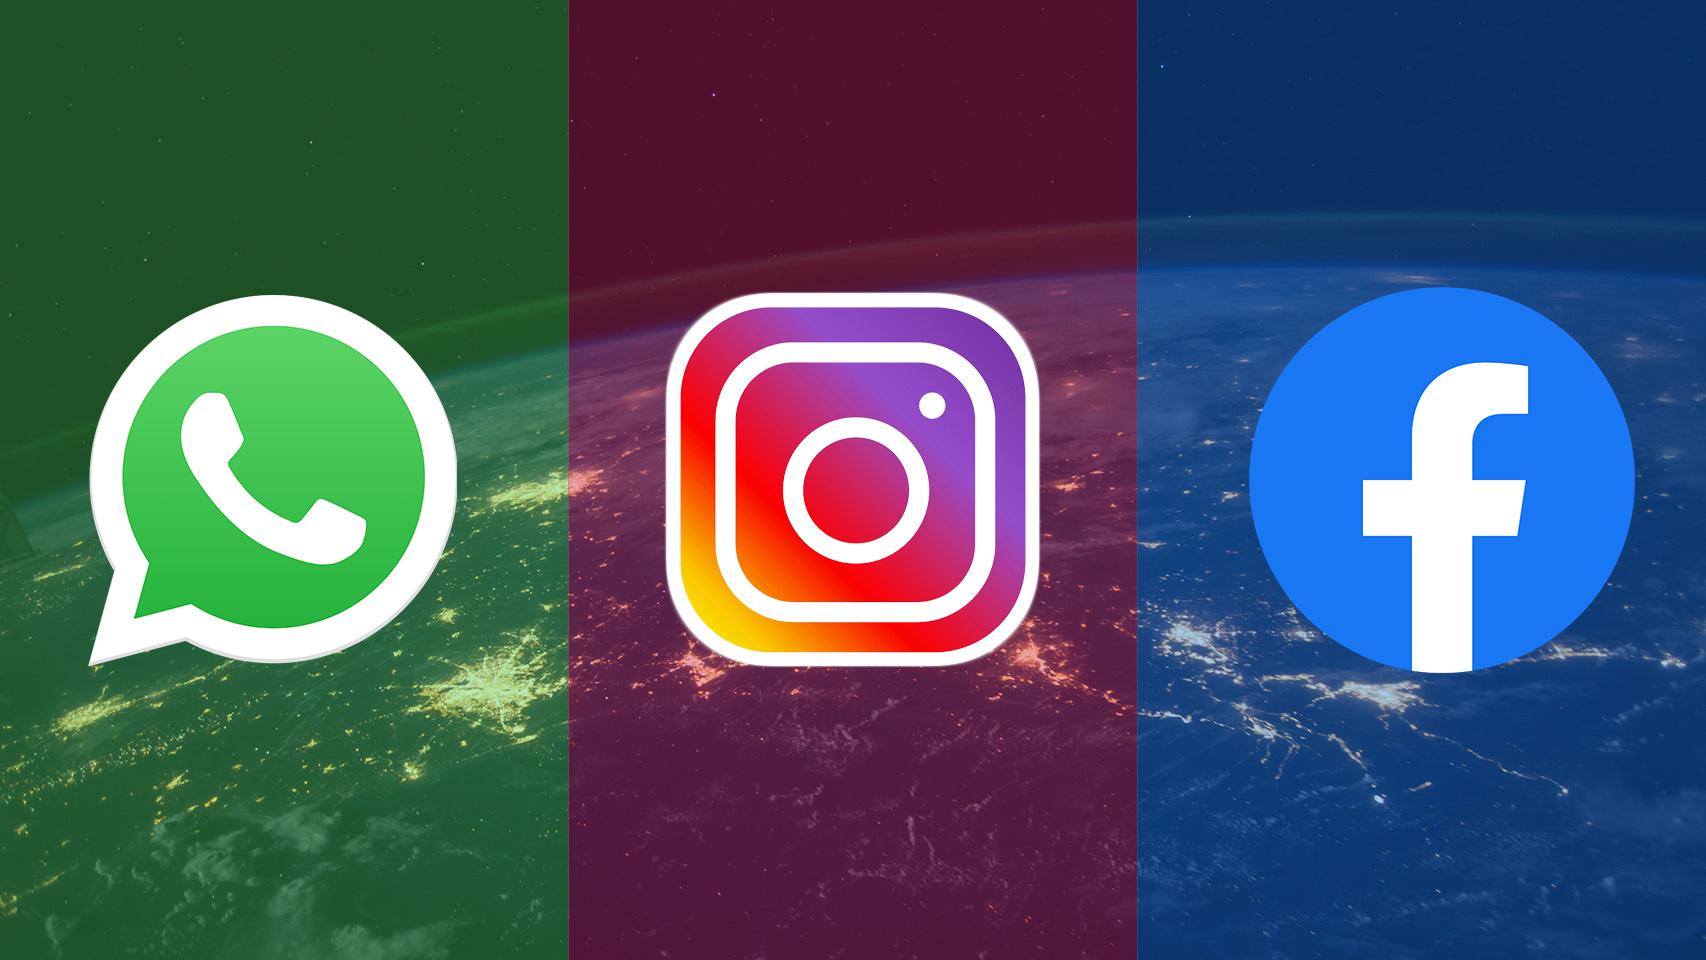 WhatsApp, Instagram y Facebook vuelven a funcionar tras más de seis horas de caída